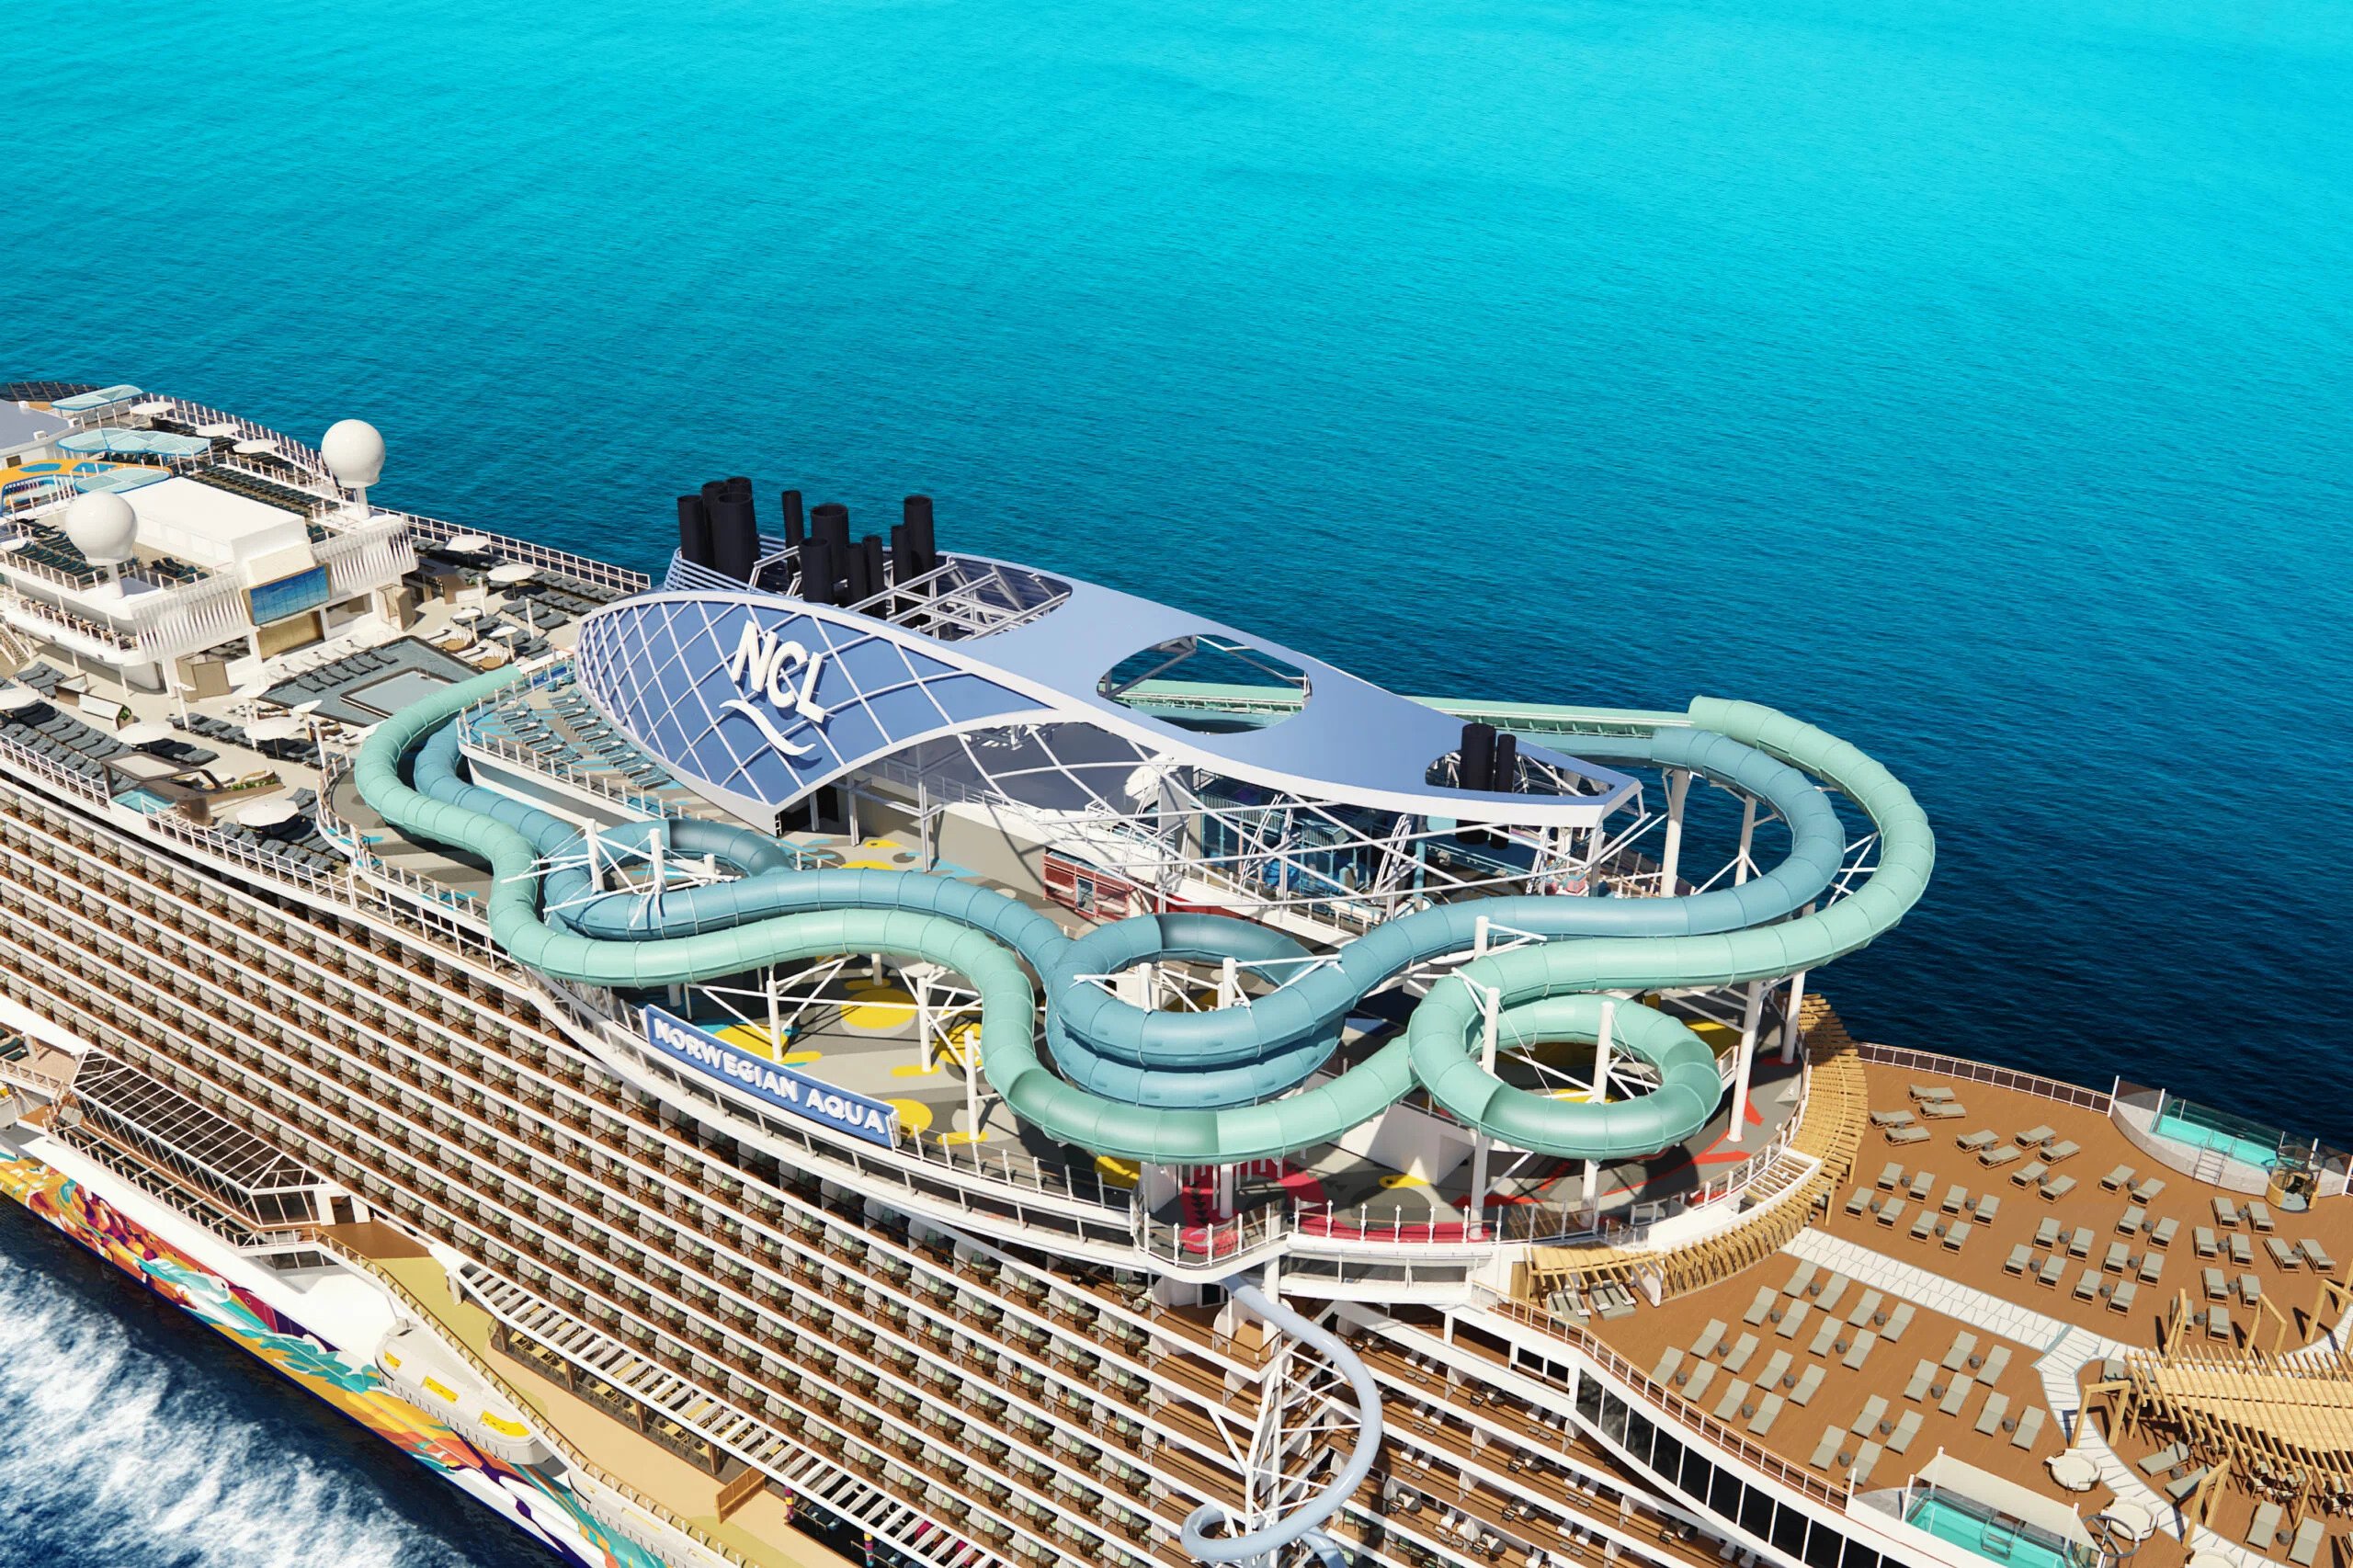 Croaziera 2025 - Caraibe si America Centrala (Miami, FL) - Norwegian Cruise Line - Norwegian Aqua - 4 nopti